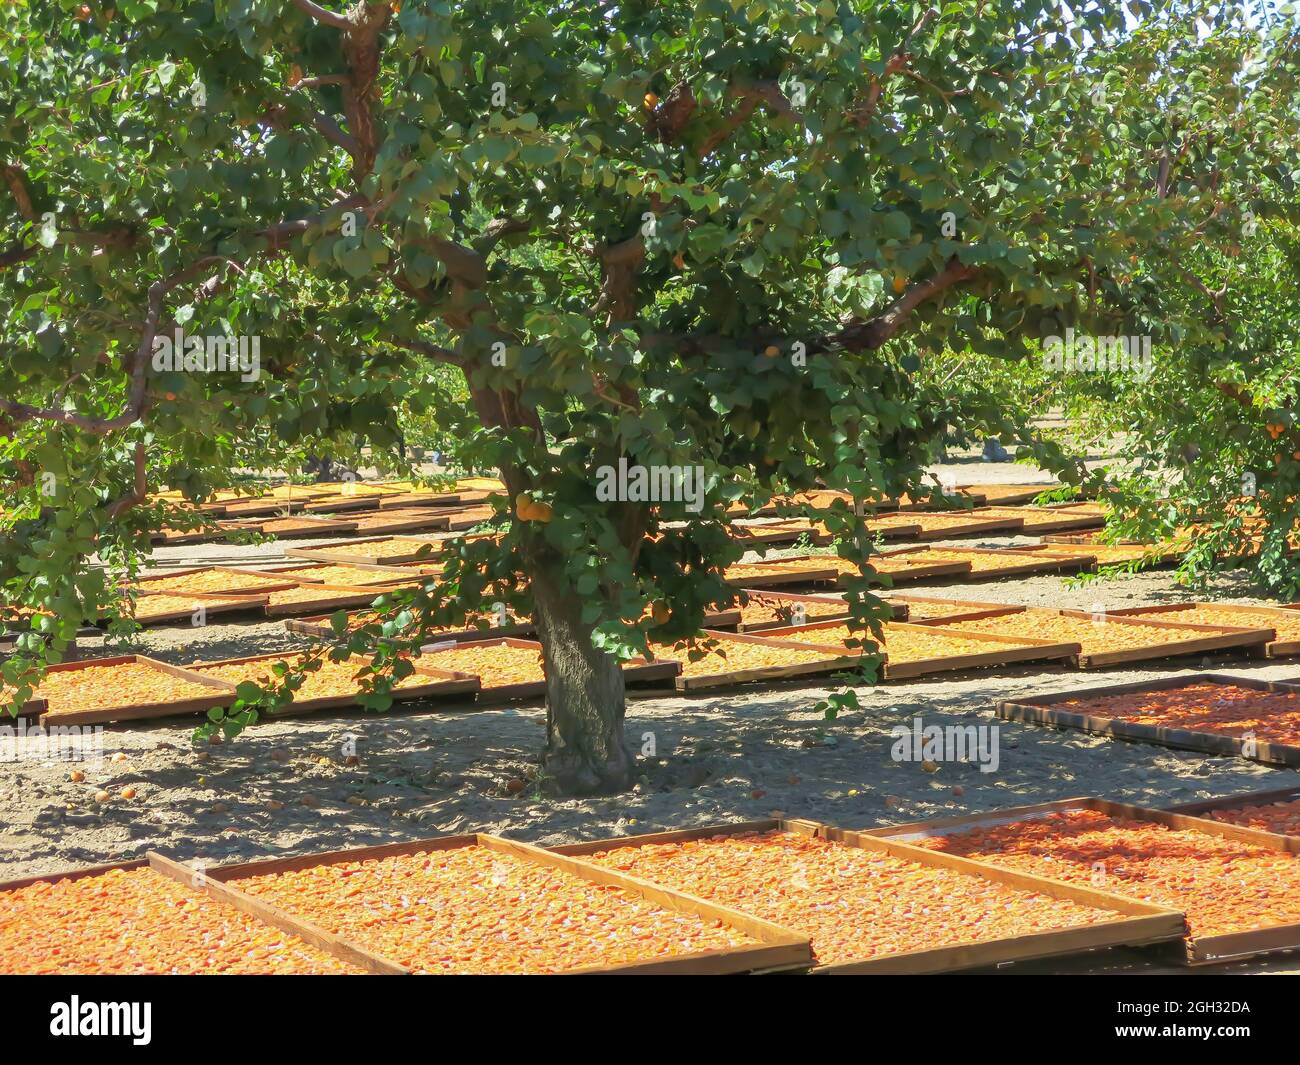 Les abricots de Blenheim séchant sur des racks sous arbre fruitier prêt pour la récolte Banque D'Images